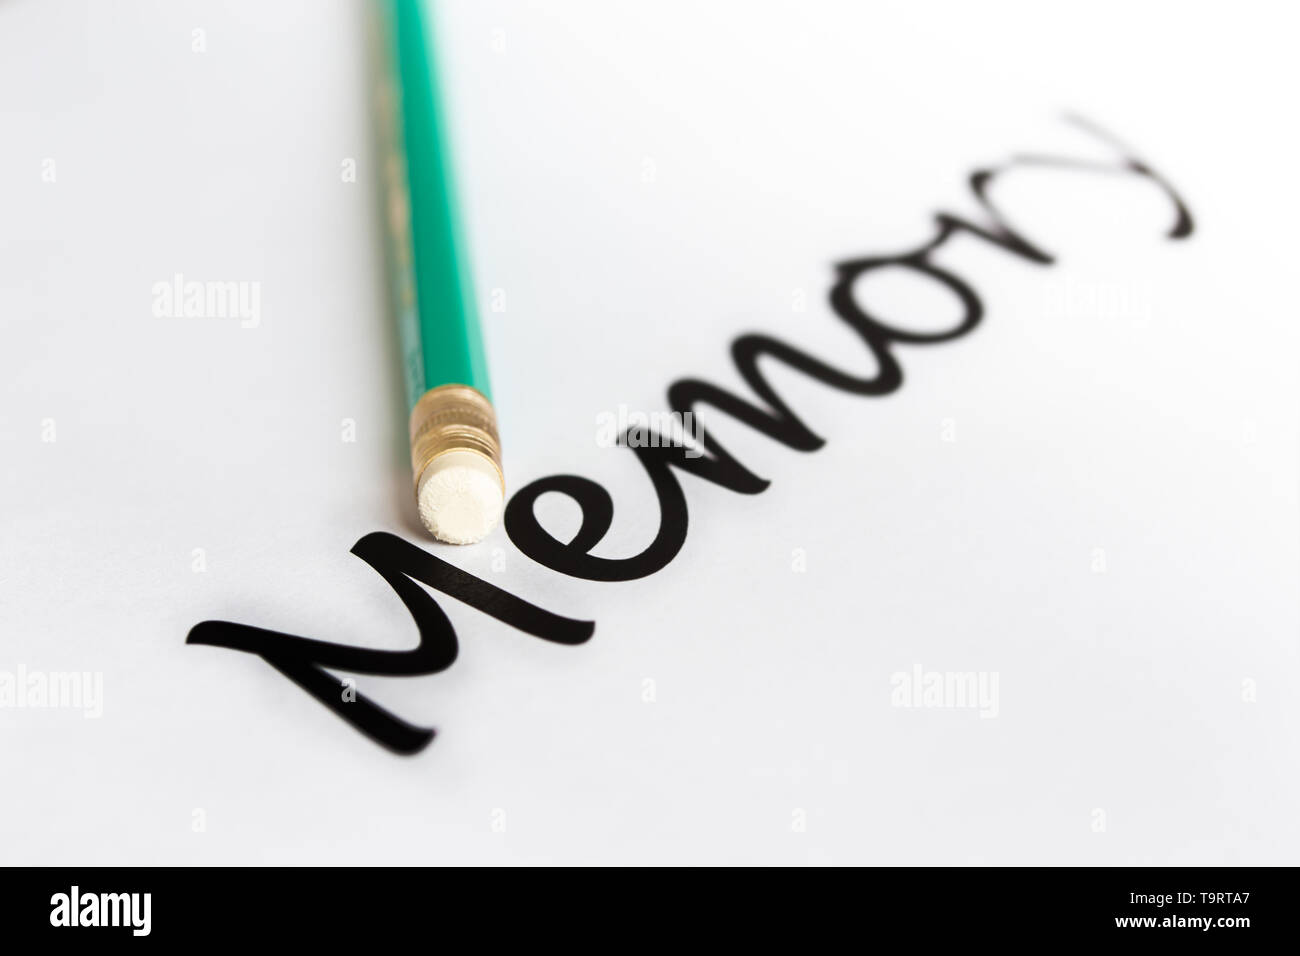 Ein Bleistift mit Radiergummi und das Wort 'memory' mit einem verschwommenen Ende. Das Konzept der Speicherprobleme, Oblivion. Stockfoto